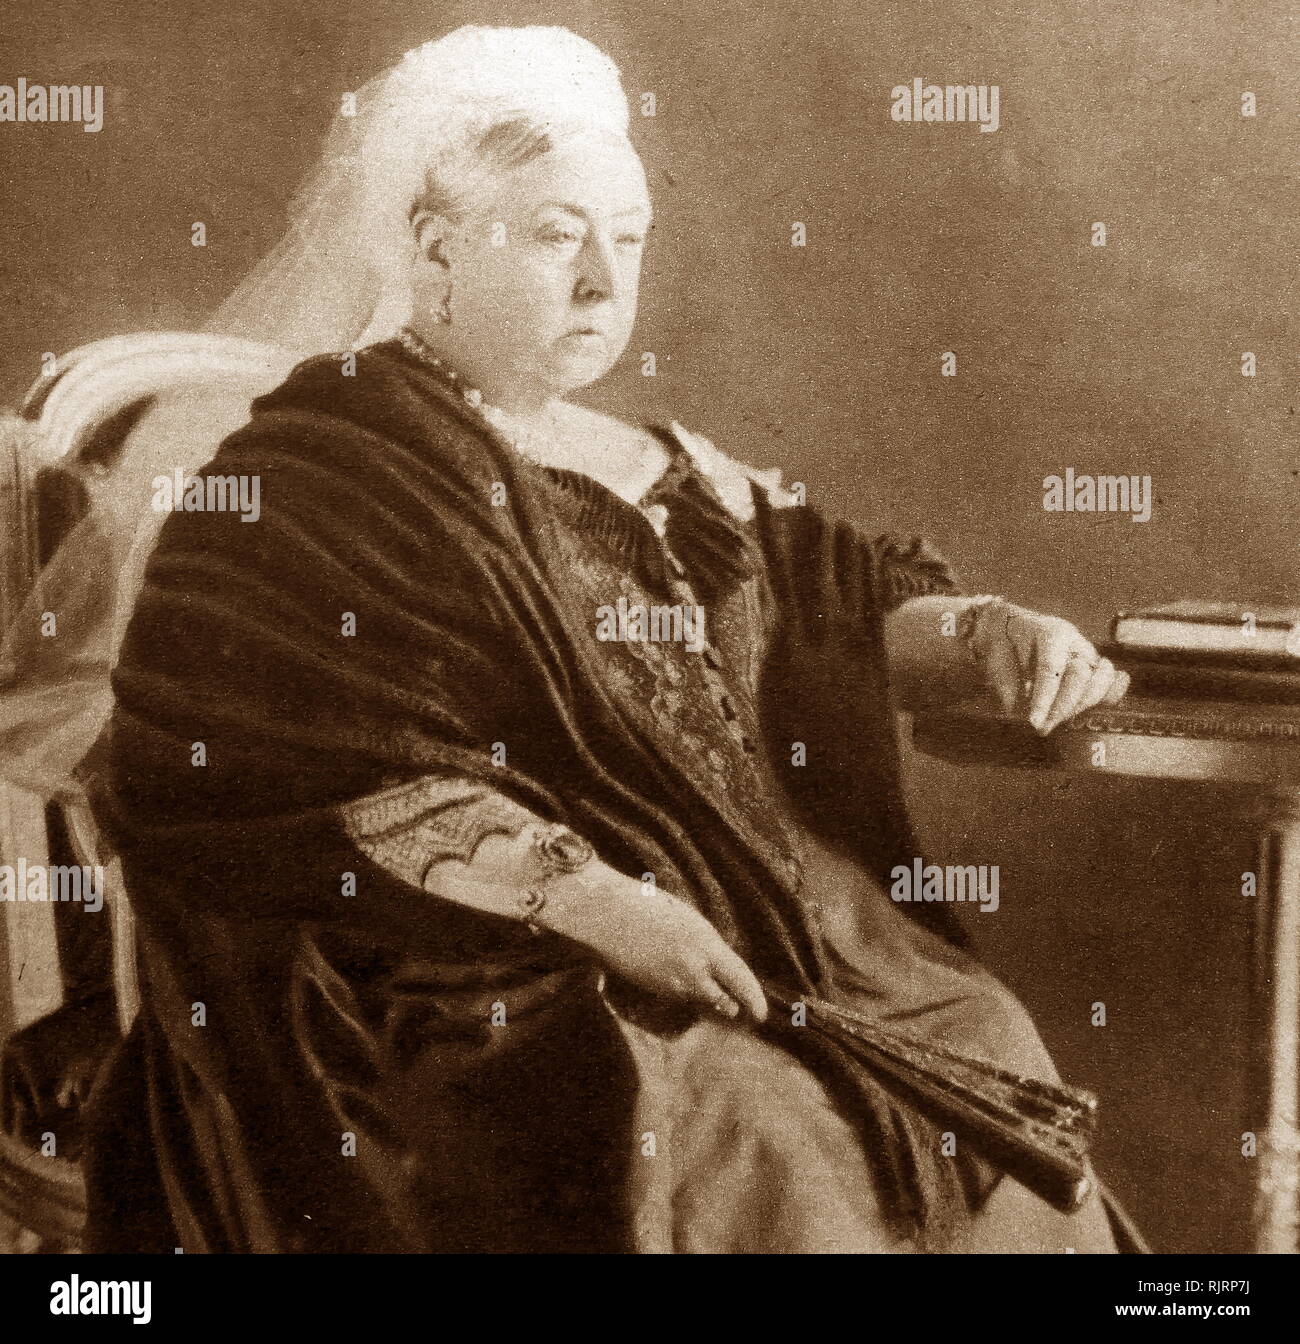 Victoria (1819 - 1901), Reine du Royaume-Uni de Grande-Bretagne et d'Irlande de 20 juin 1837 jusqu'à sa mort. Le 1er mai 1876, elle a adopté le titre supplémentaire de l'Impératrice de l'Inde. Banque D'Images